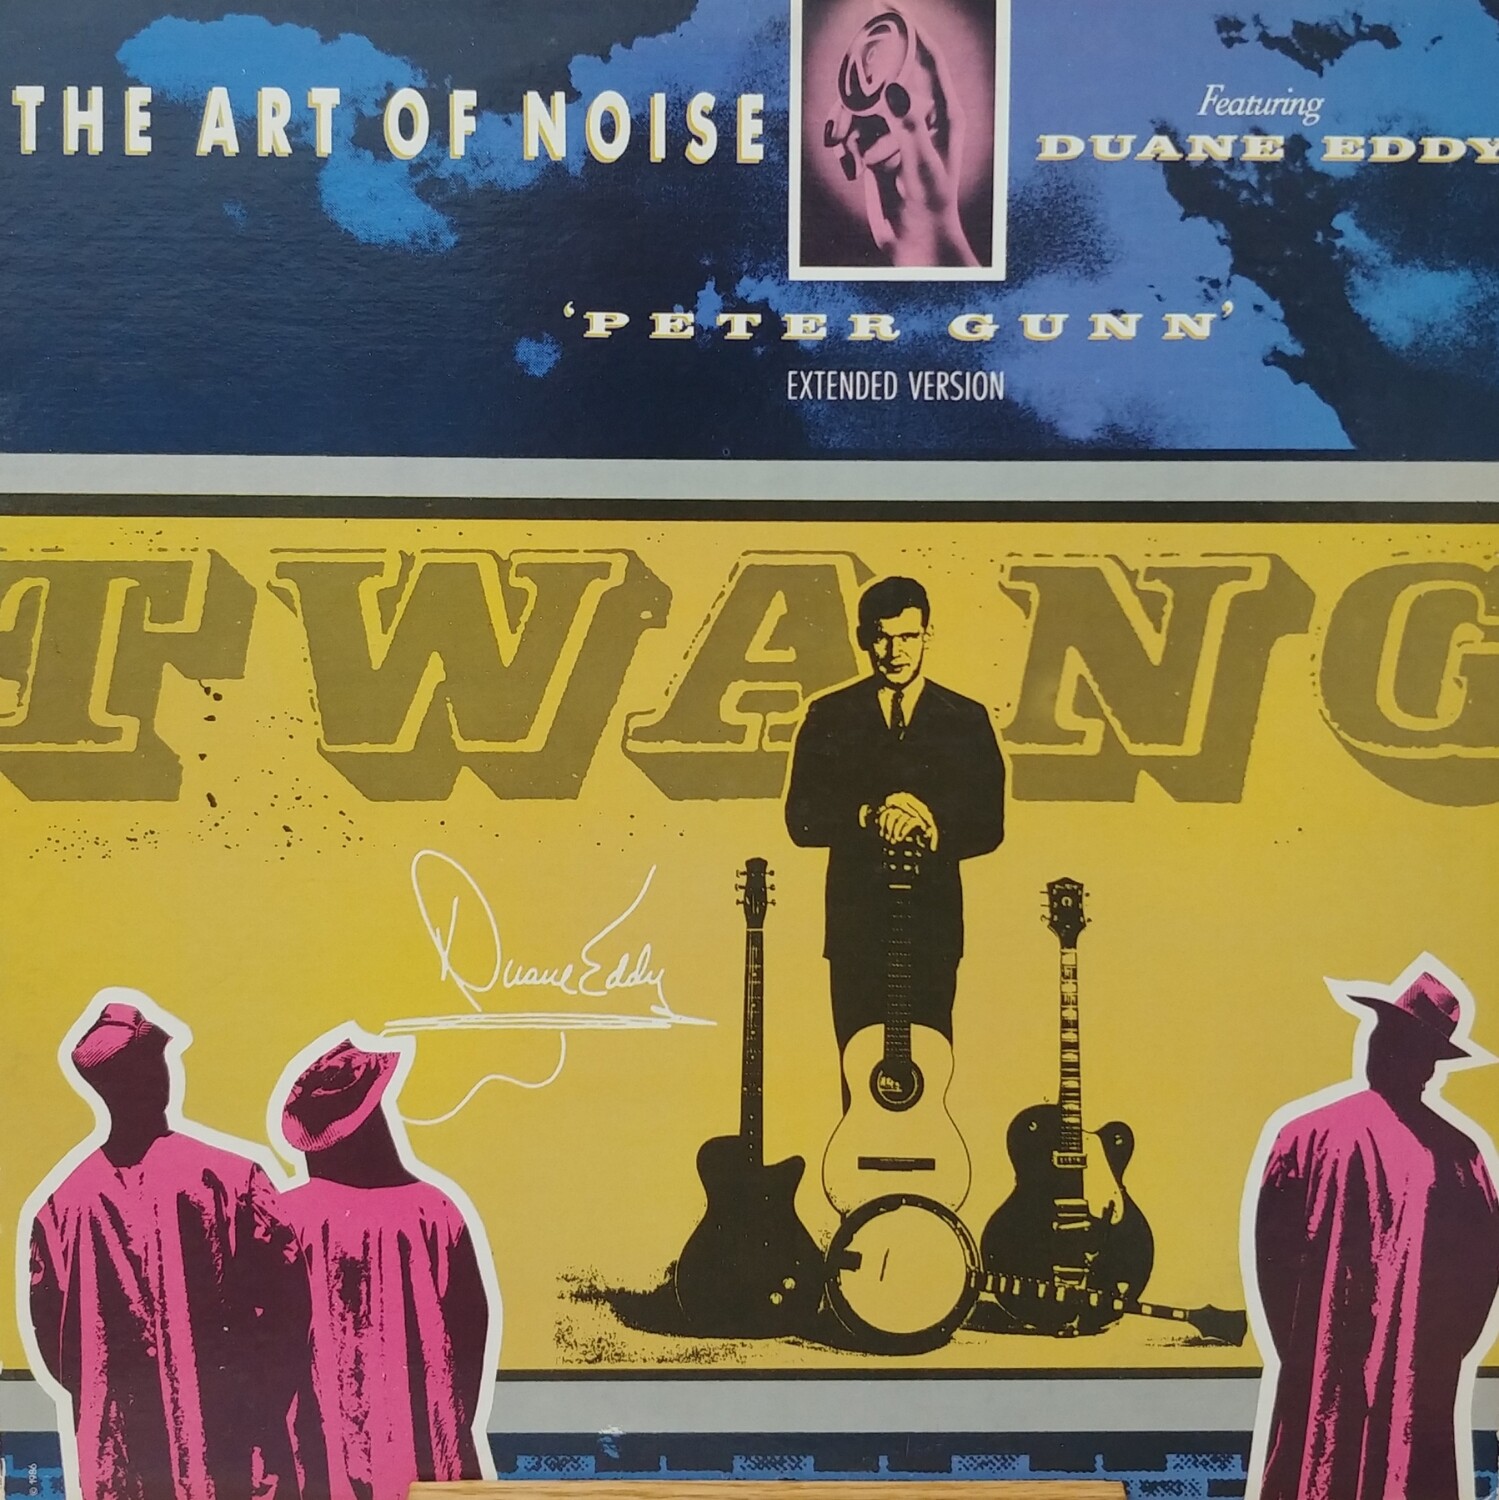 The art of noise - Peter Gunn (Extended Version)